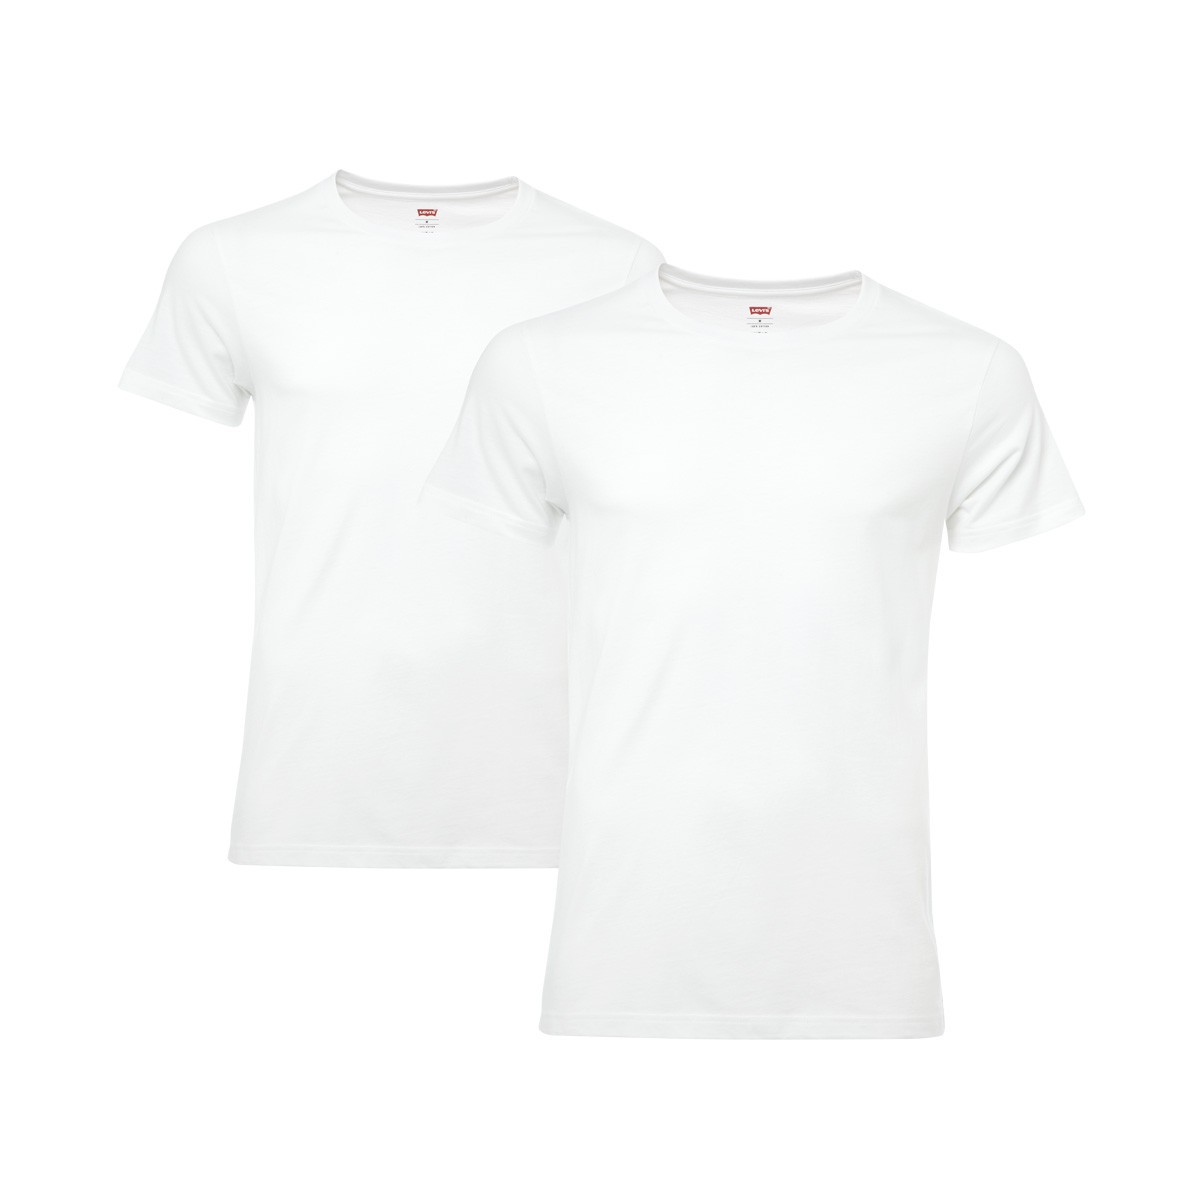 4 er Pack Levis Crew T-Shirt Men Herren Unterhemd Rundhals von Levi&#039;s